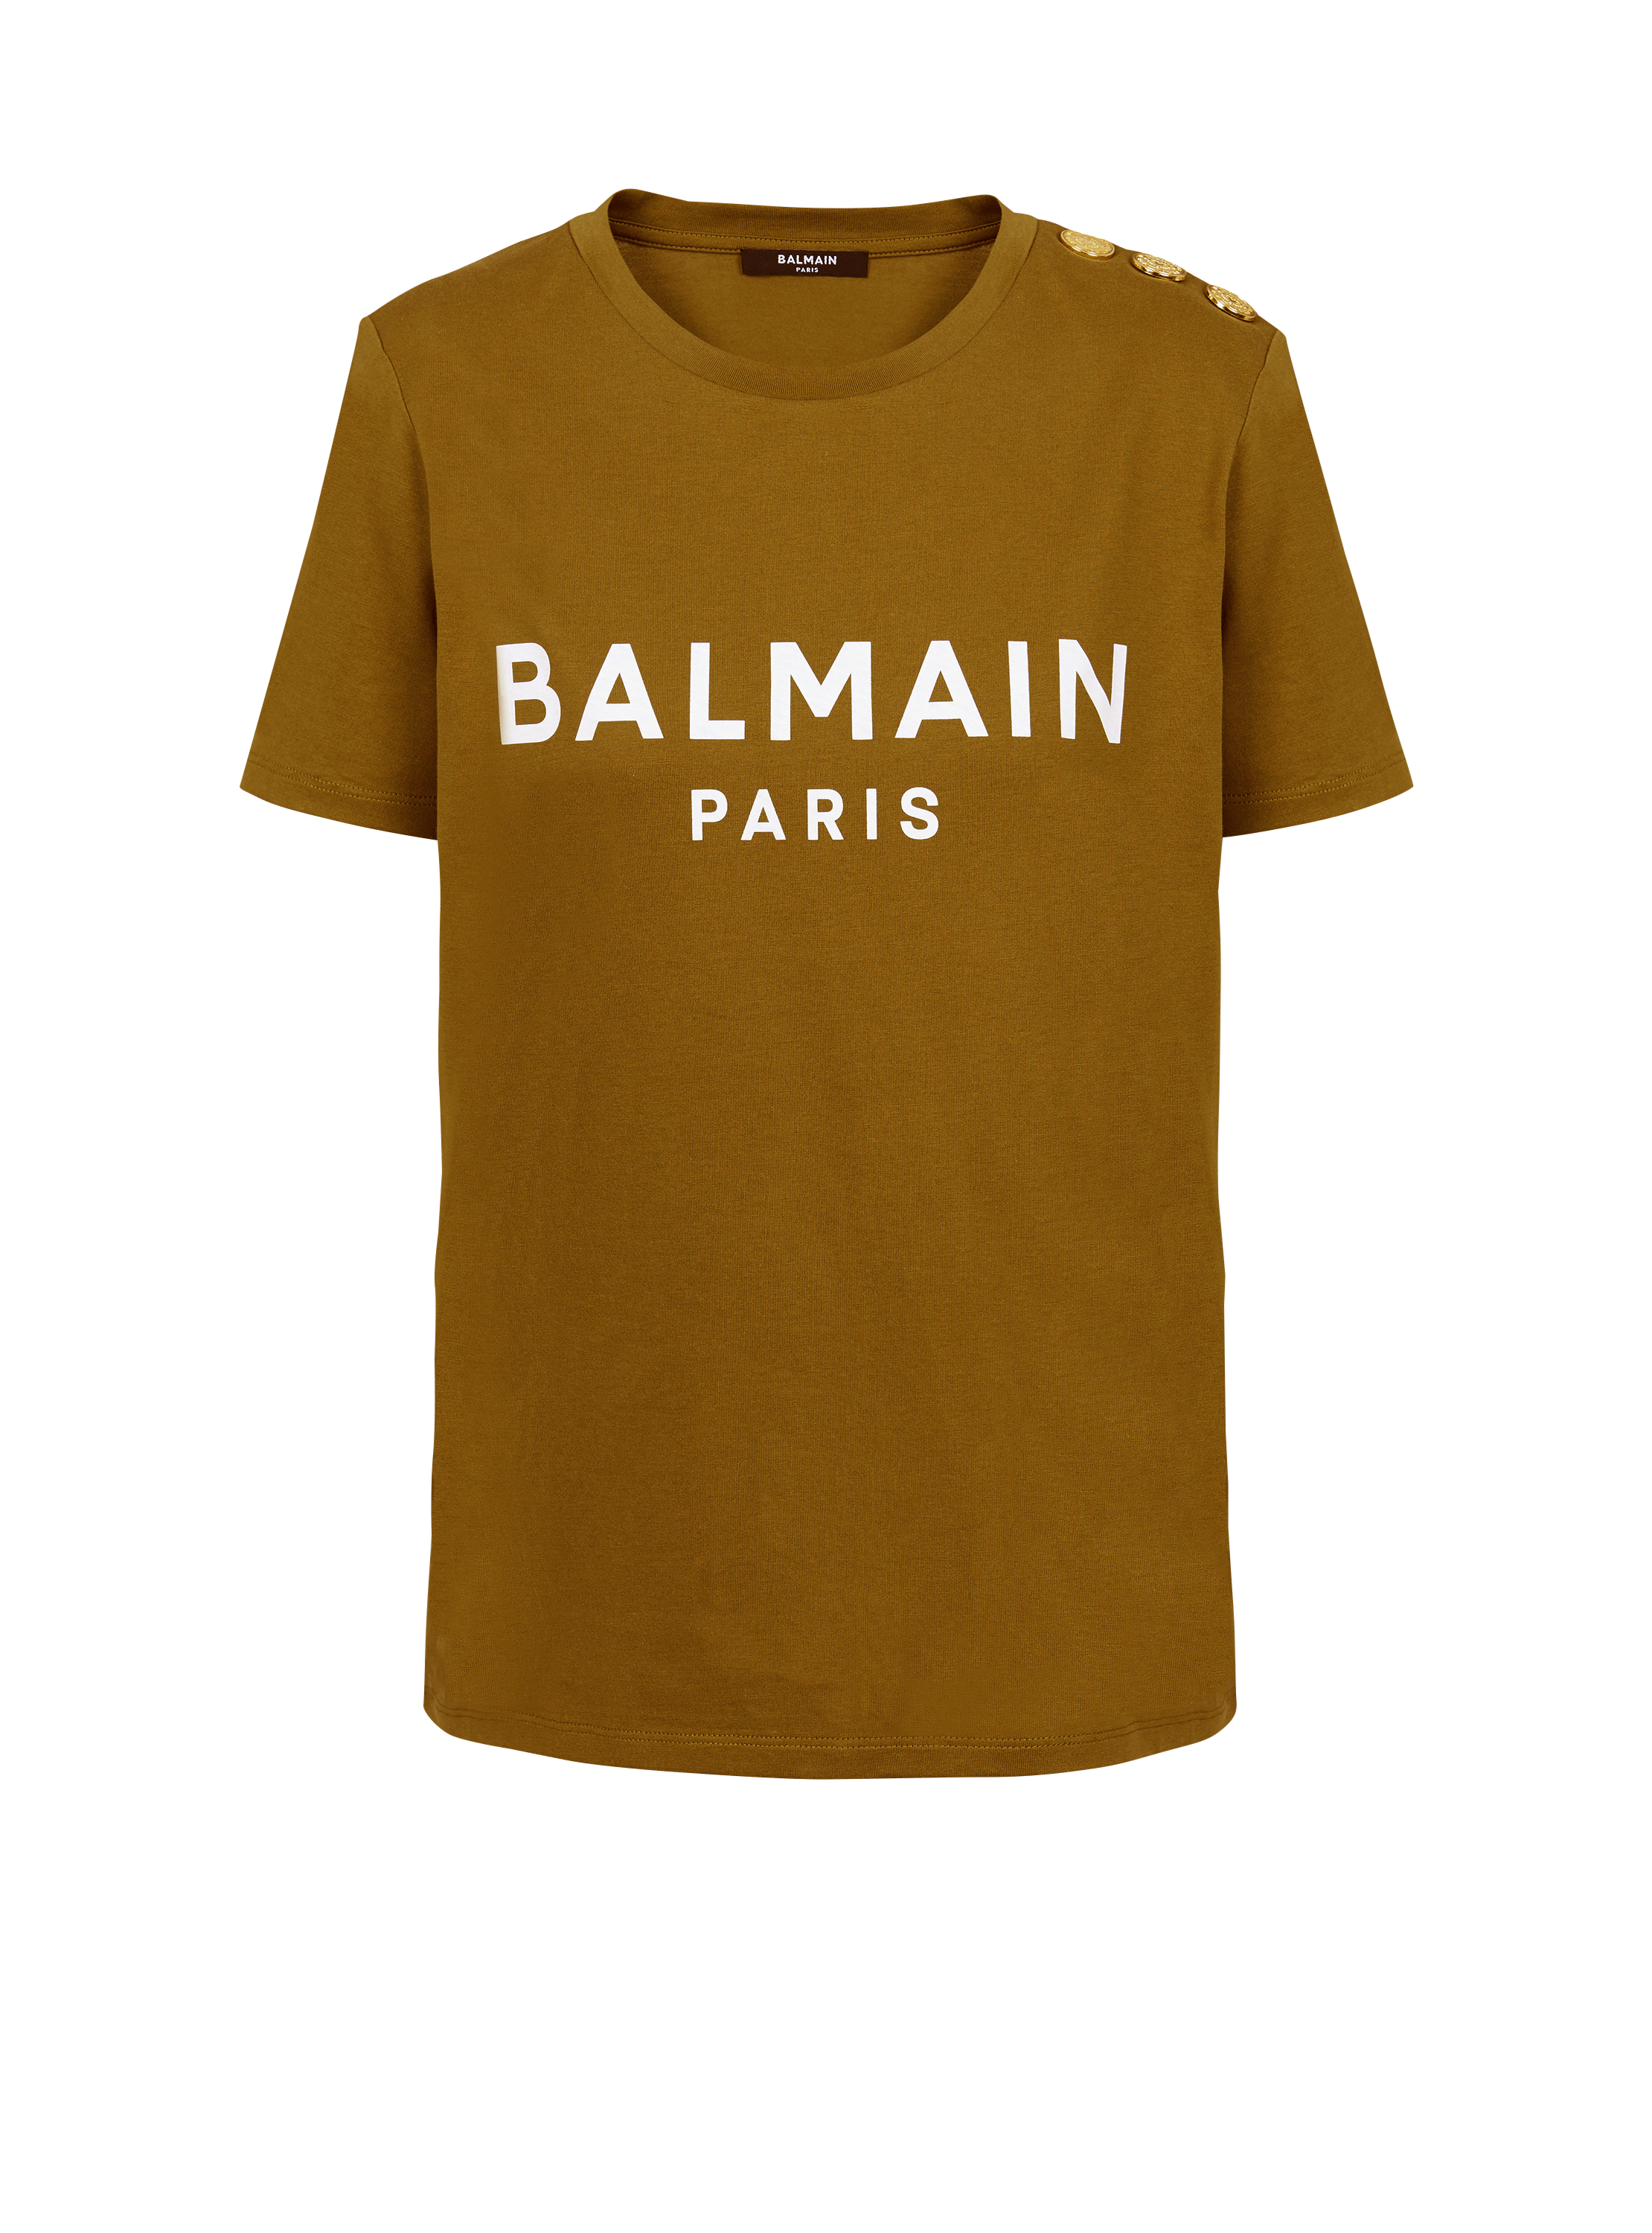 T-shirt en coton éco-responsable imprimé logo Balmain